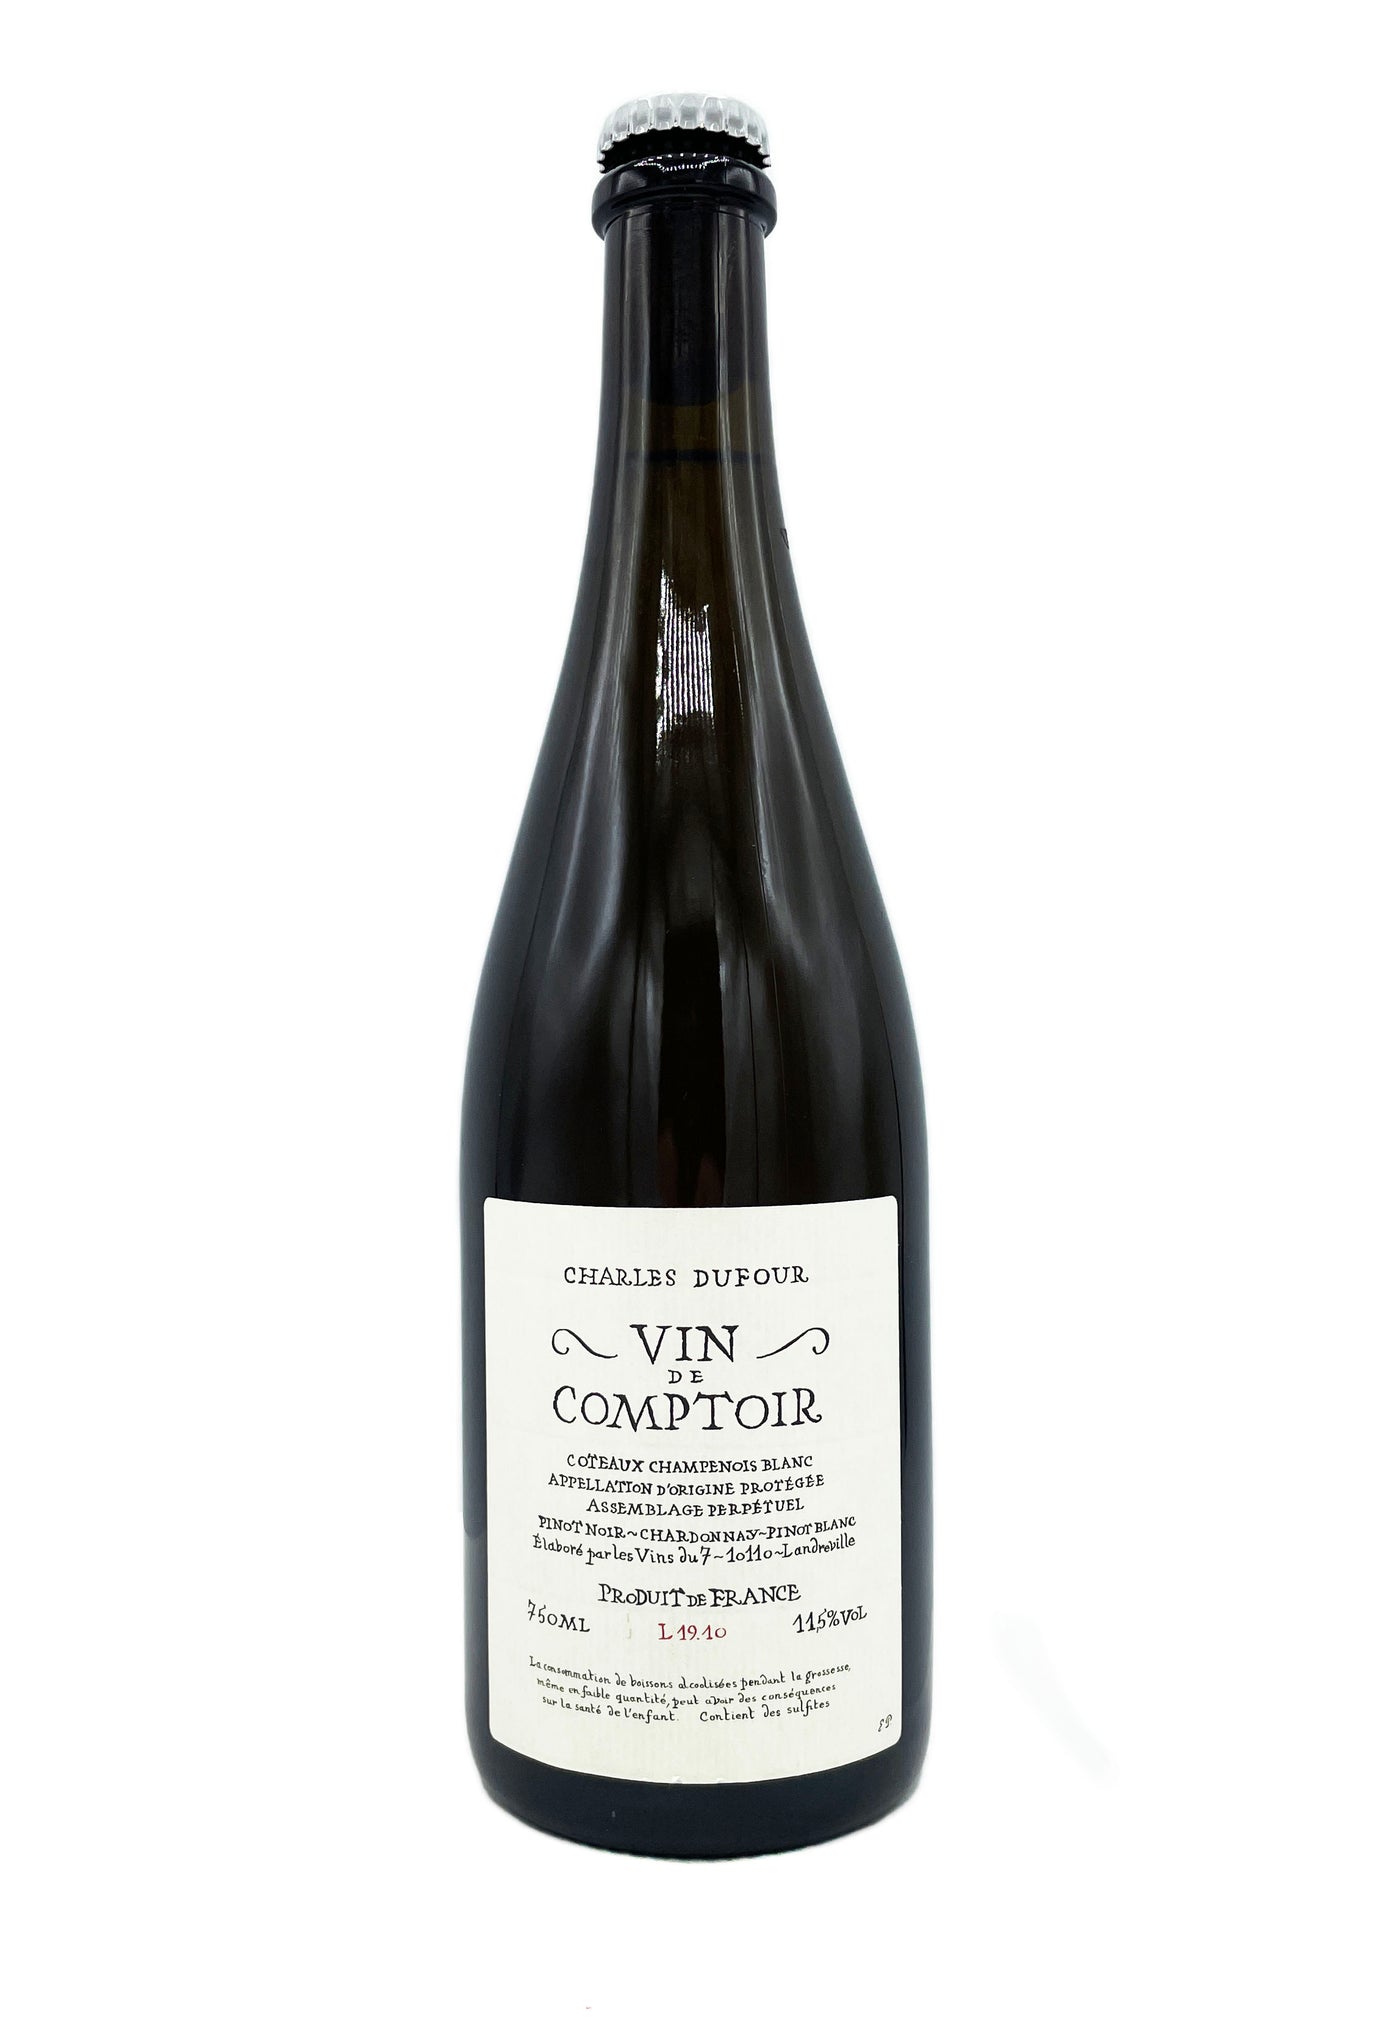 Charles Dufour Coteaux Champenois Blanc vin de Comptoir L.20